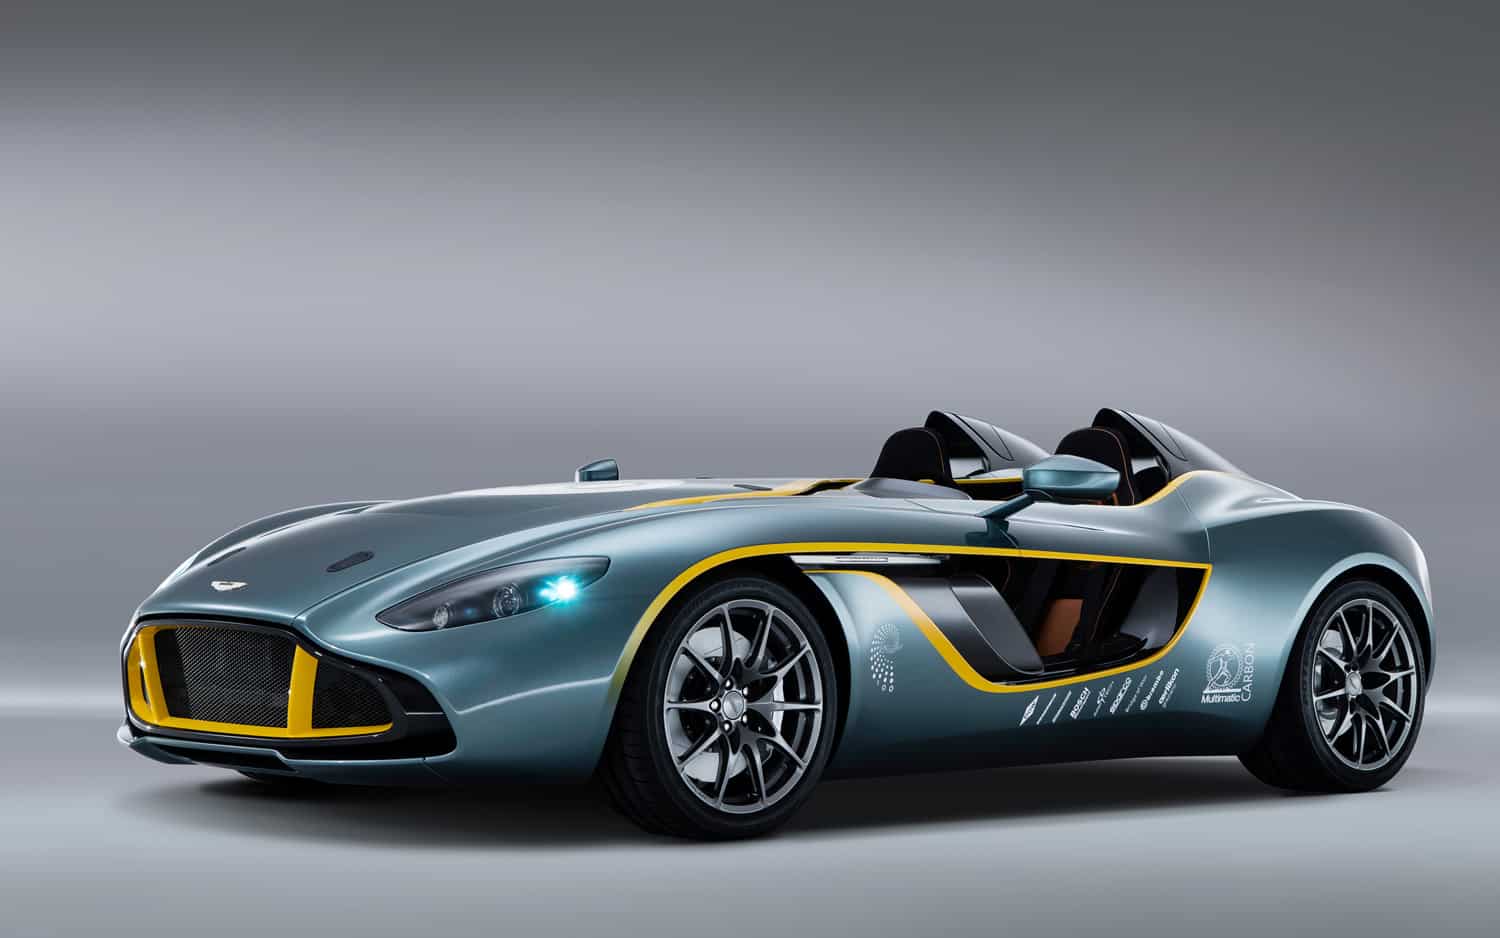 Aston Martin CC100 Speedster concept car